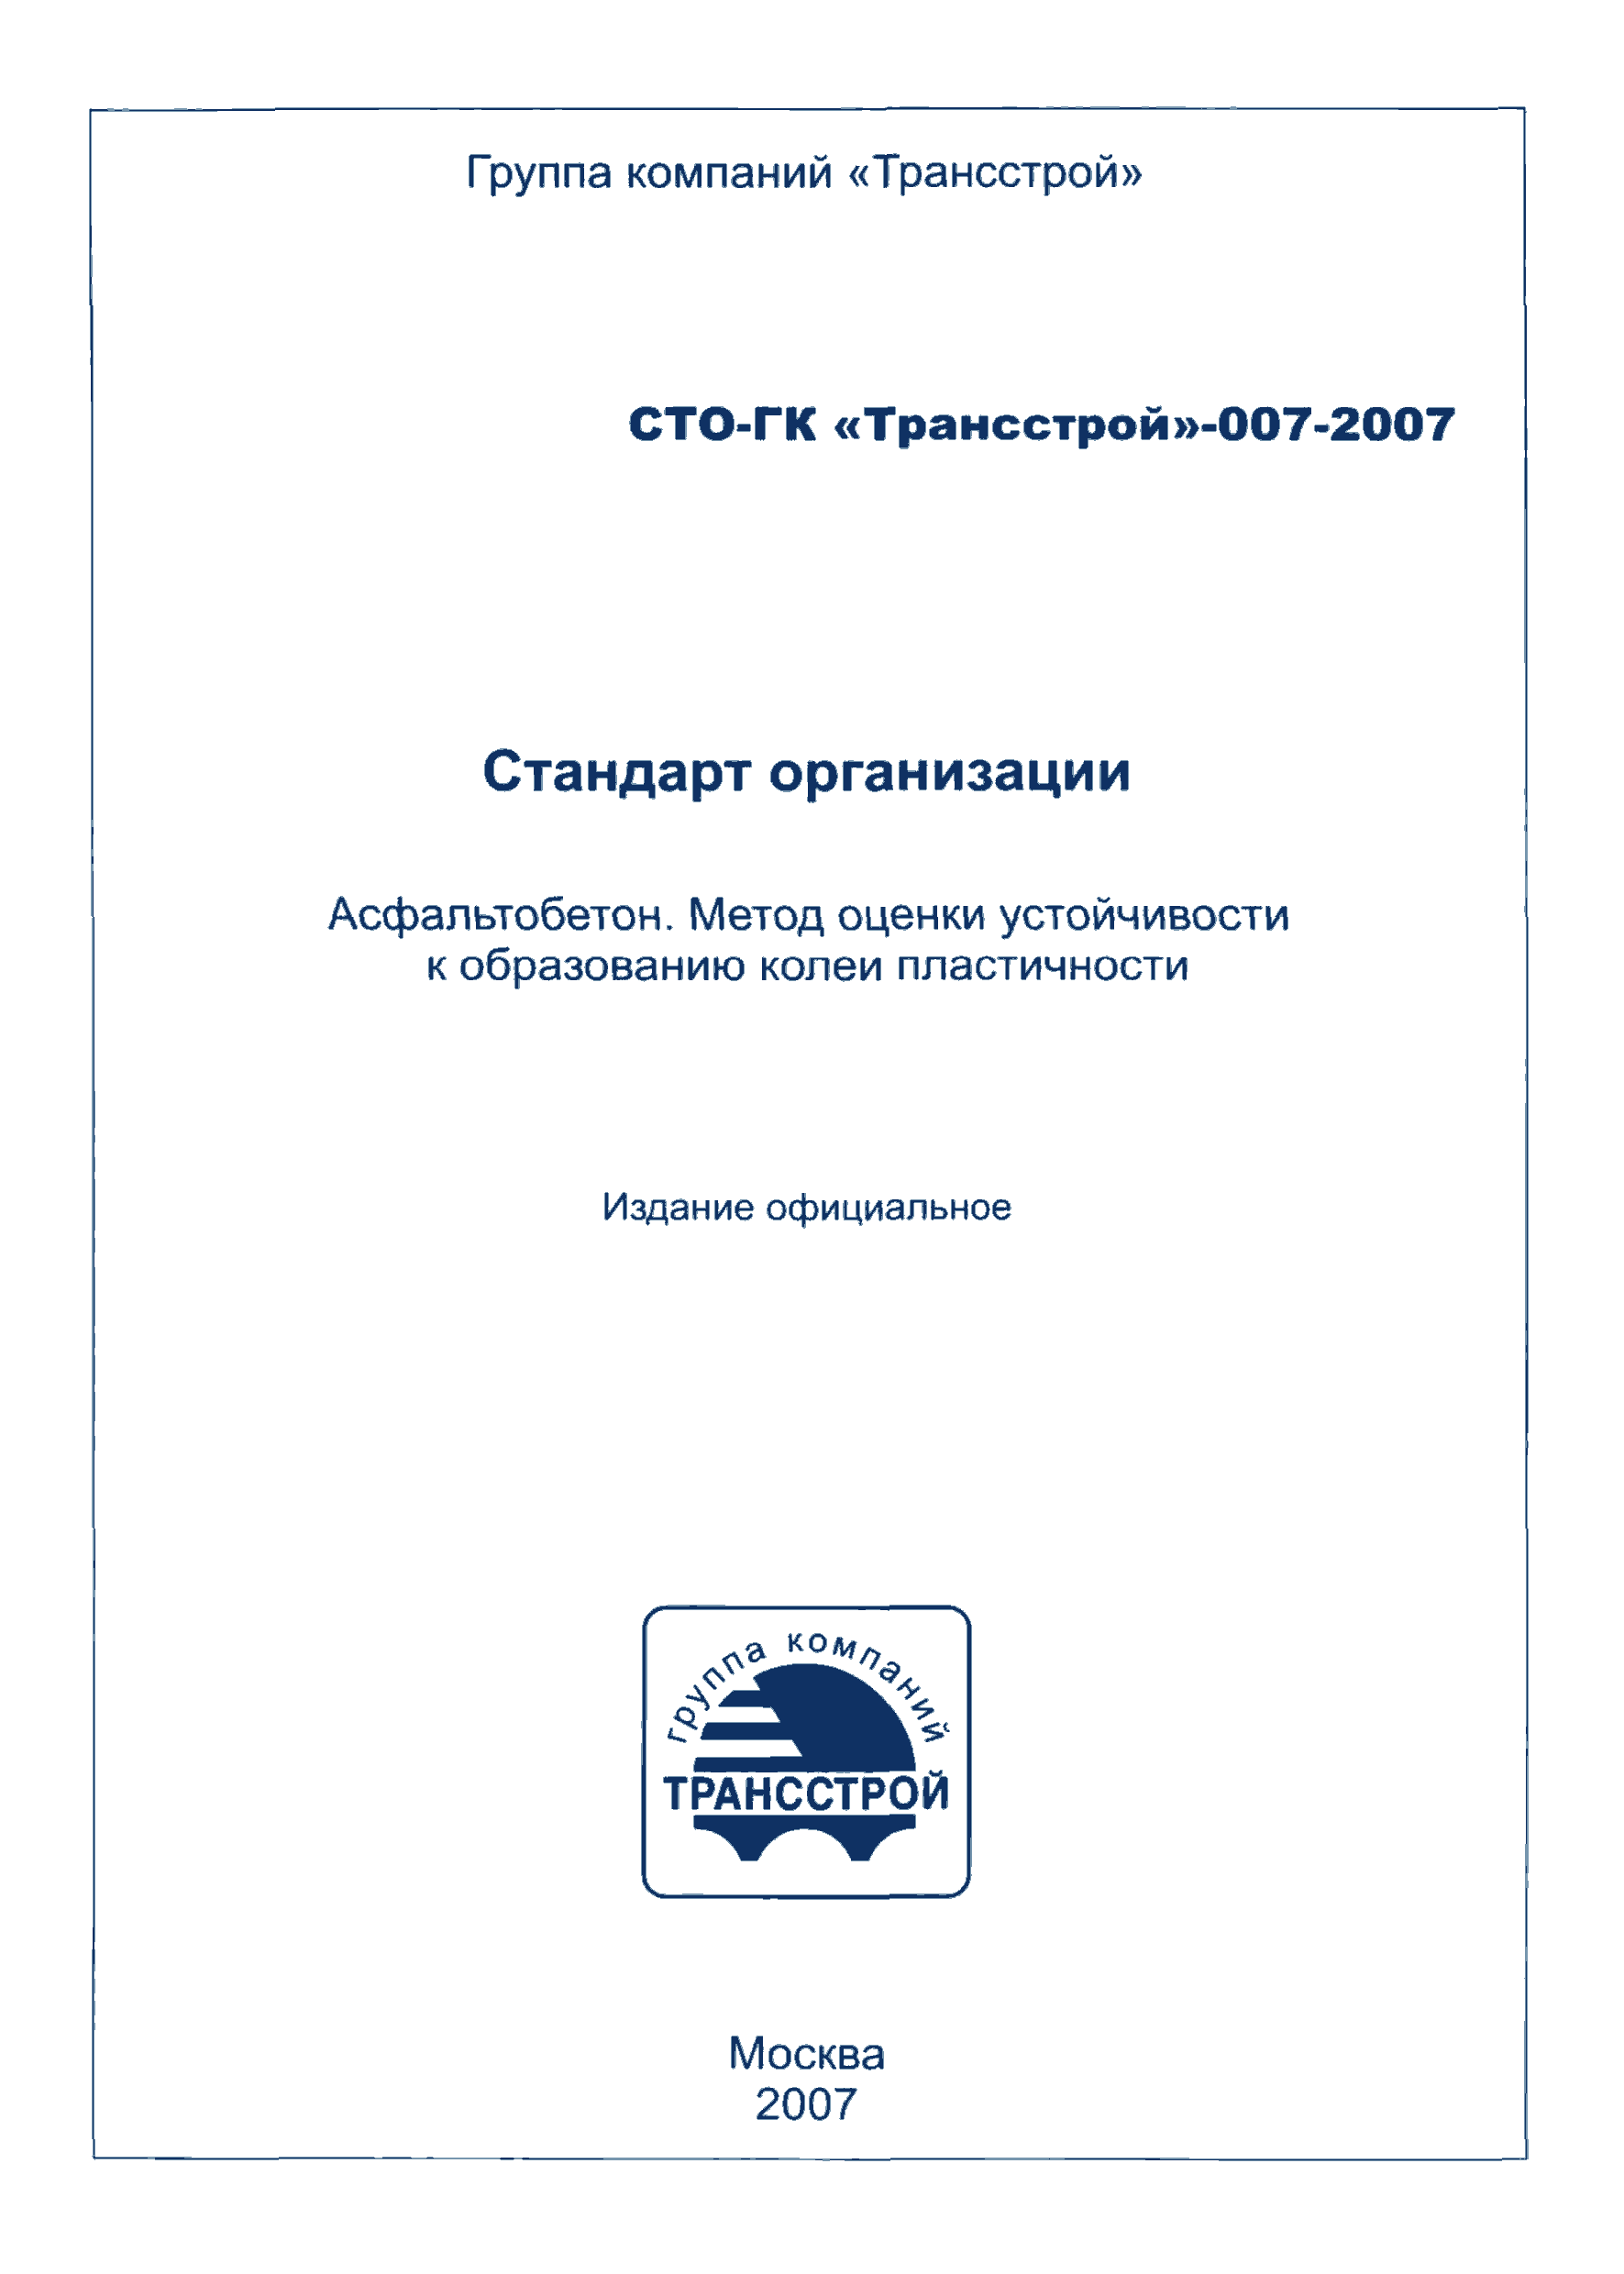 СТО-ГК "Трансстрой" 007-2007